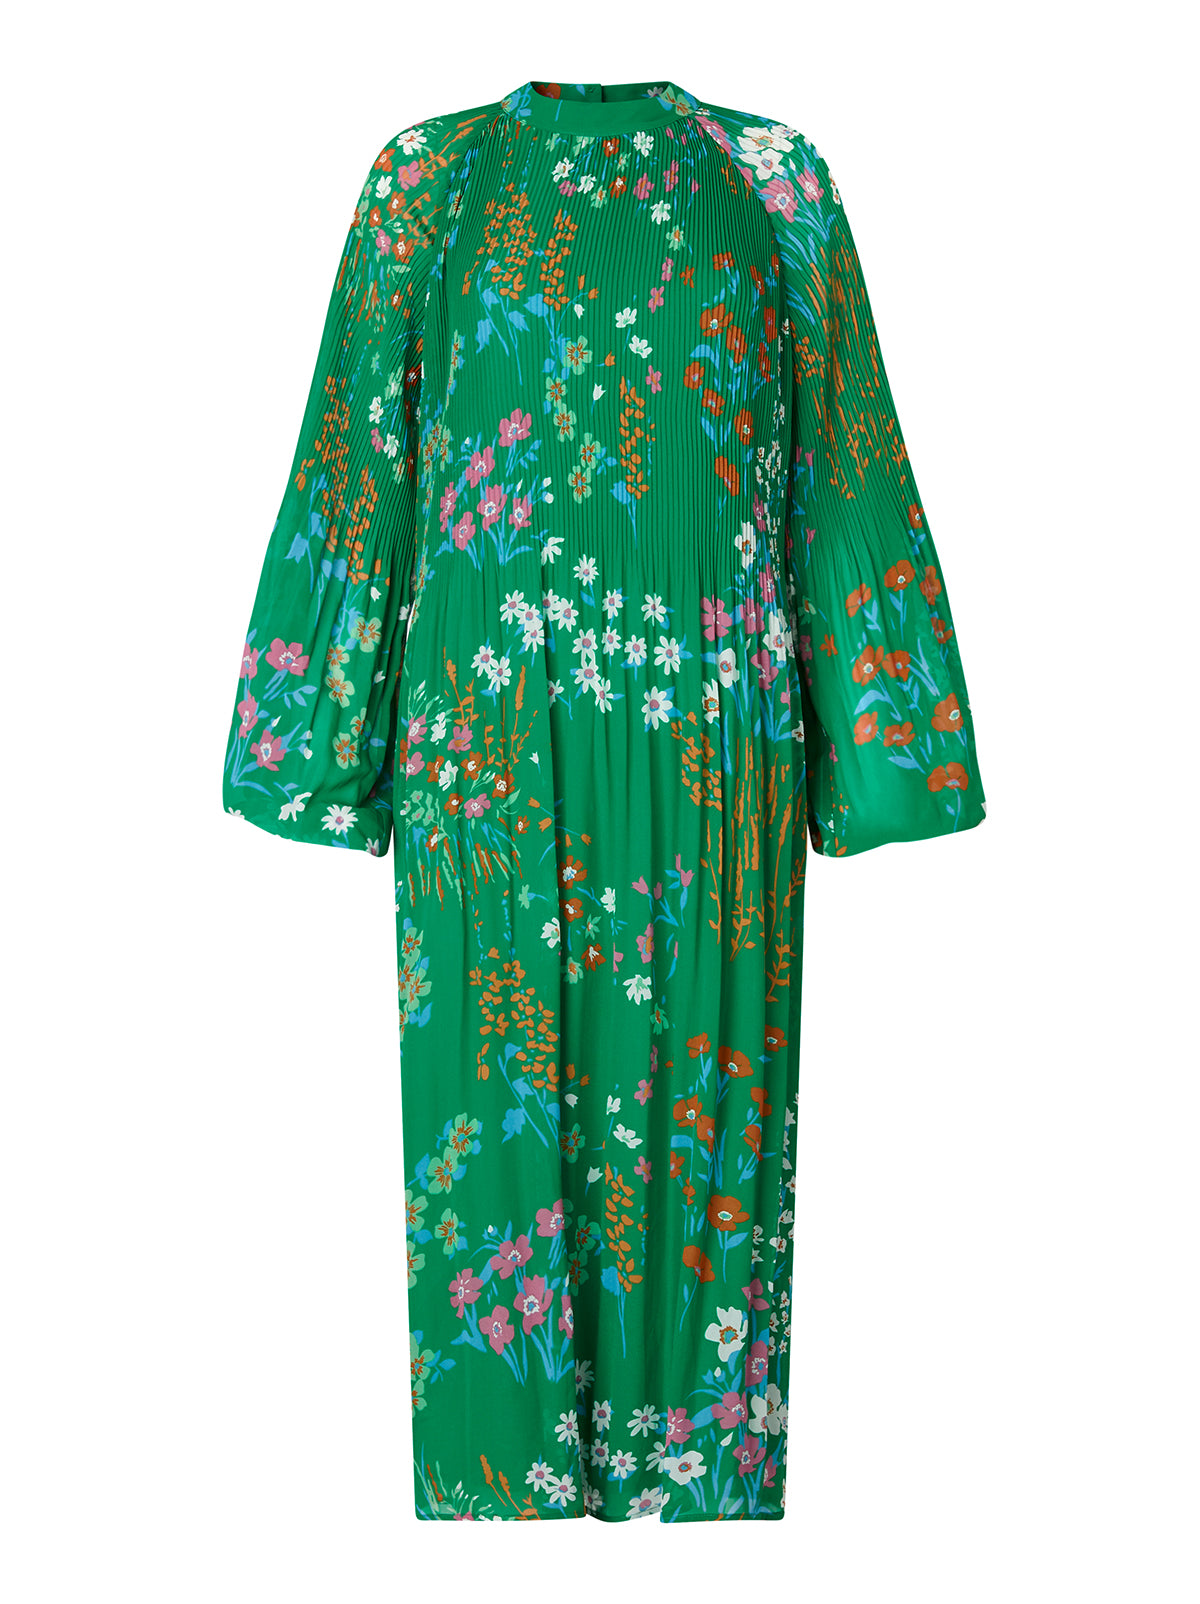 midi green floral dress